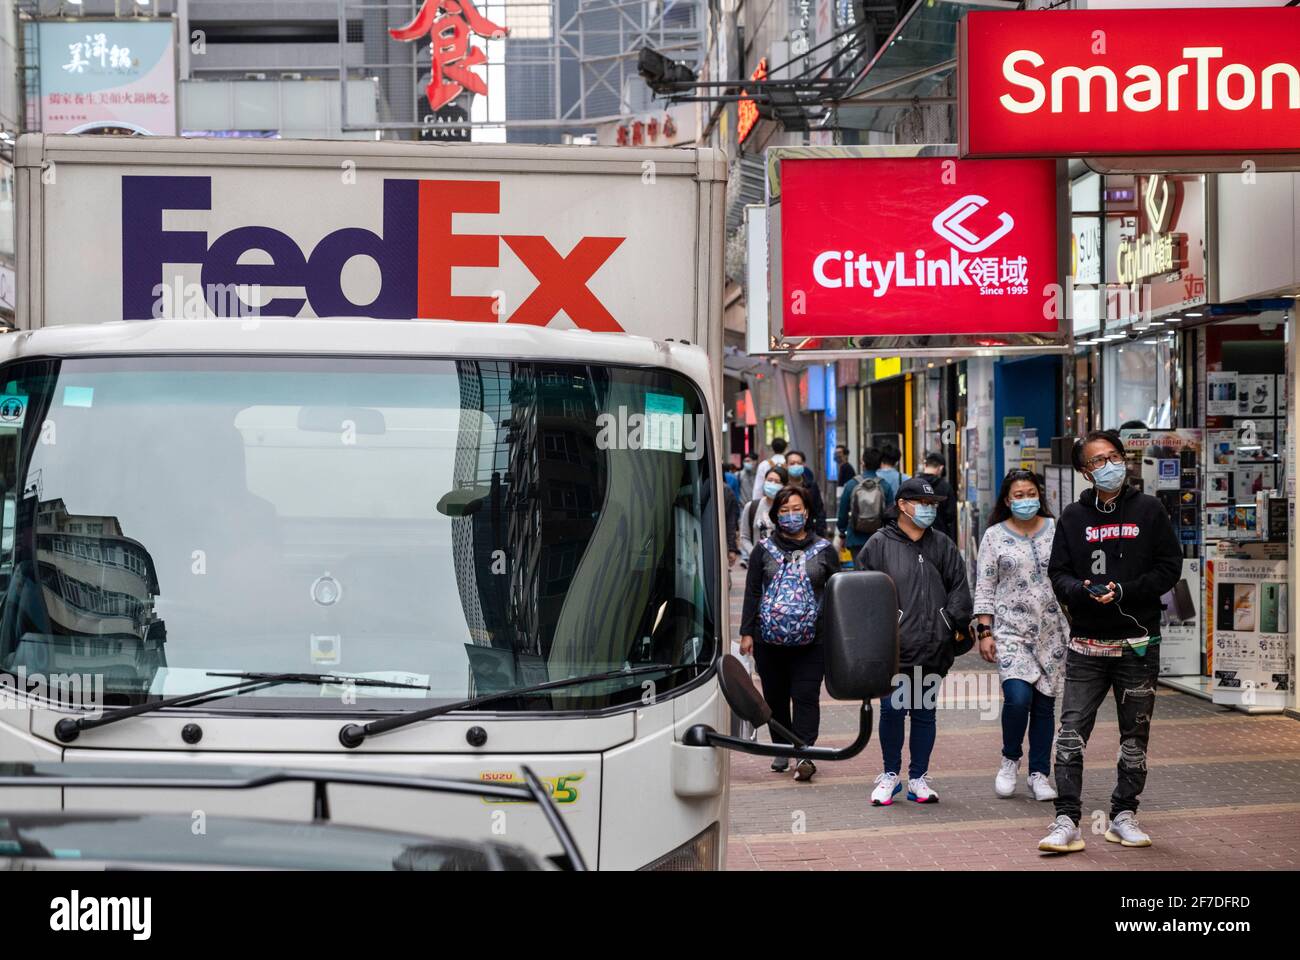 Promenez-vous à pied devant un camion de livraison American FedEx Express, des sociétés de télécommunications Citylink et SmarTone à Hong Kong. Banque D'Images